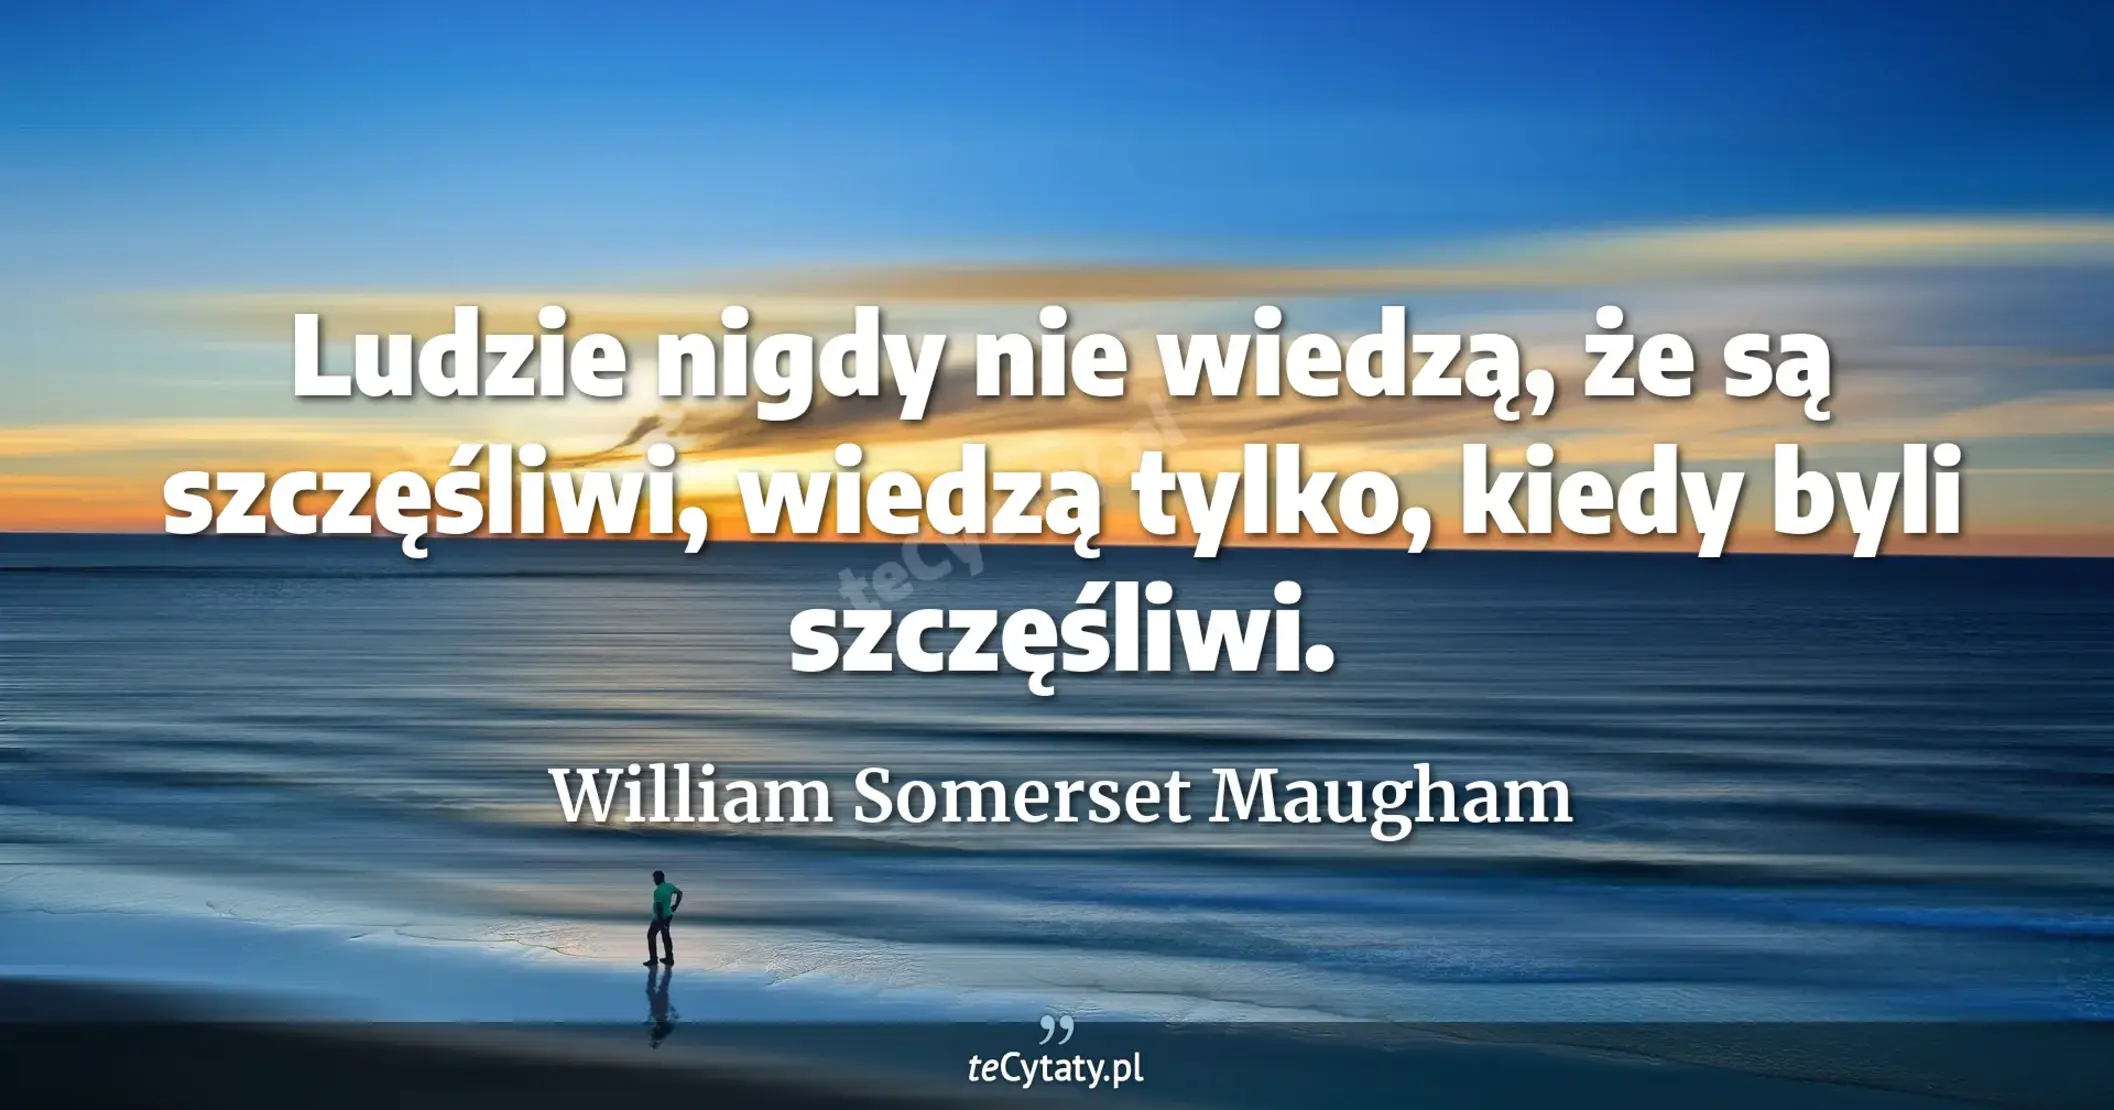 Ludzie nigdy nie wiedzą, że są szczęśliwi, wiedzą tylko, kiedy byli szczęśliwi. - William Somerset Maugham